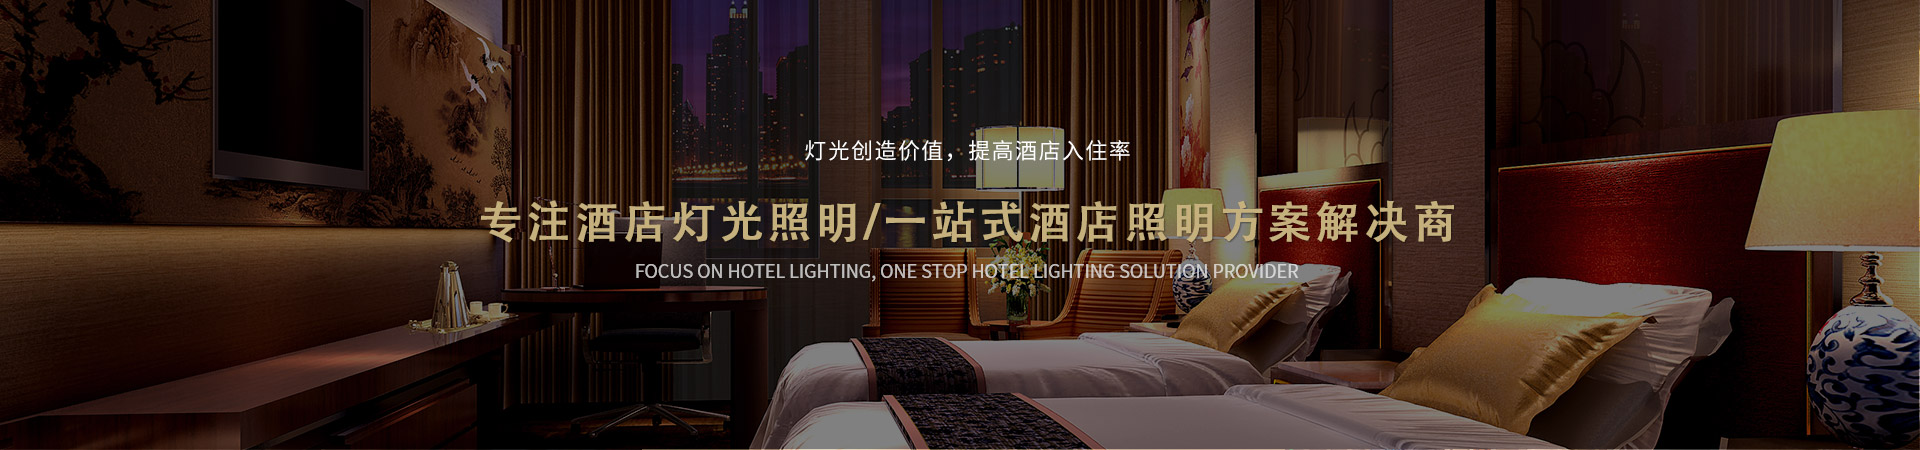 名泓照明-灯光创造价值，提高酒店入住率 专注酒店灯光照明， 一站式酒店照明方案解决商